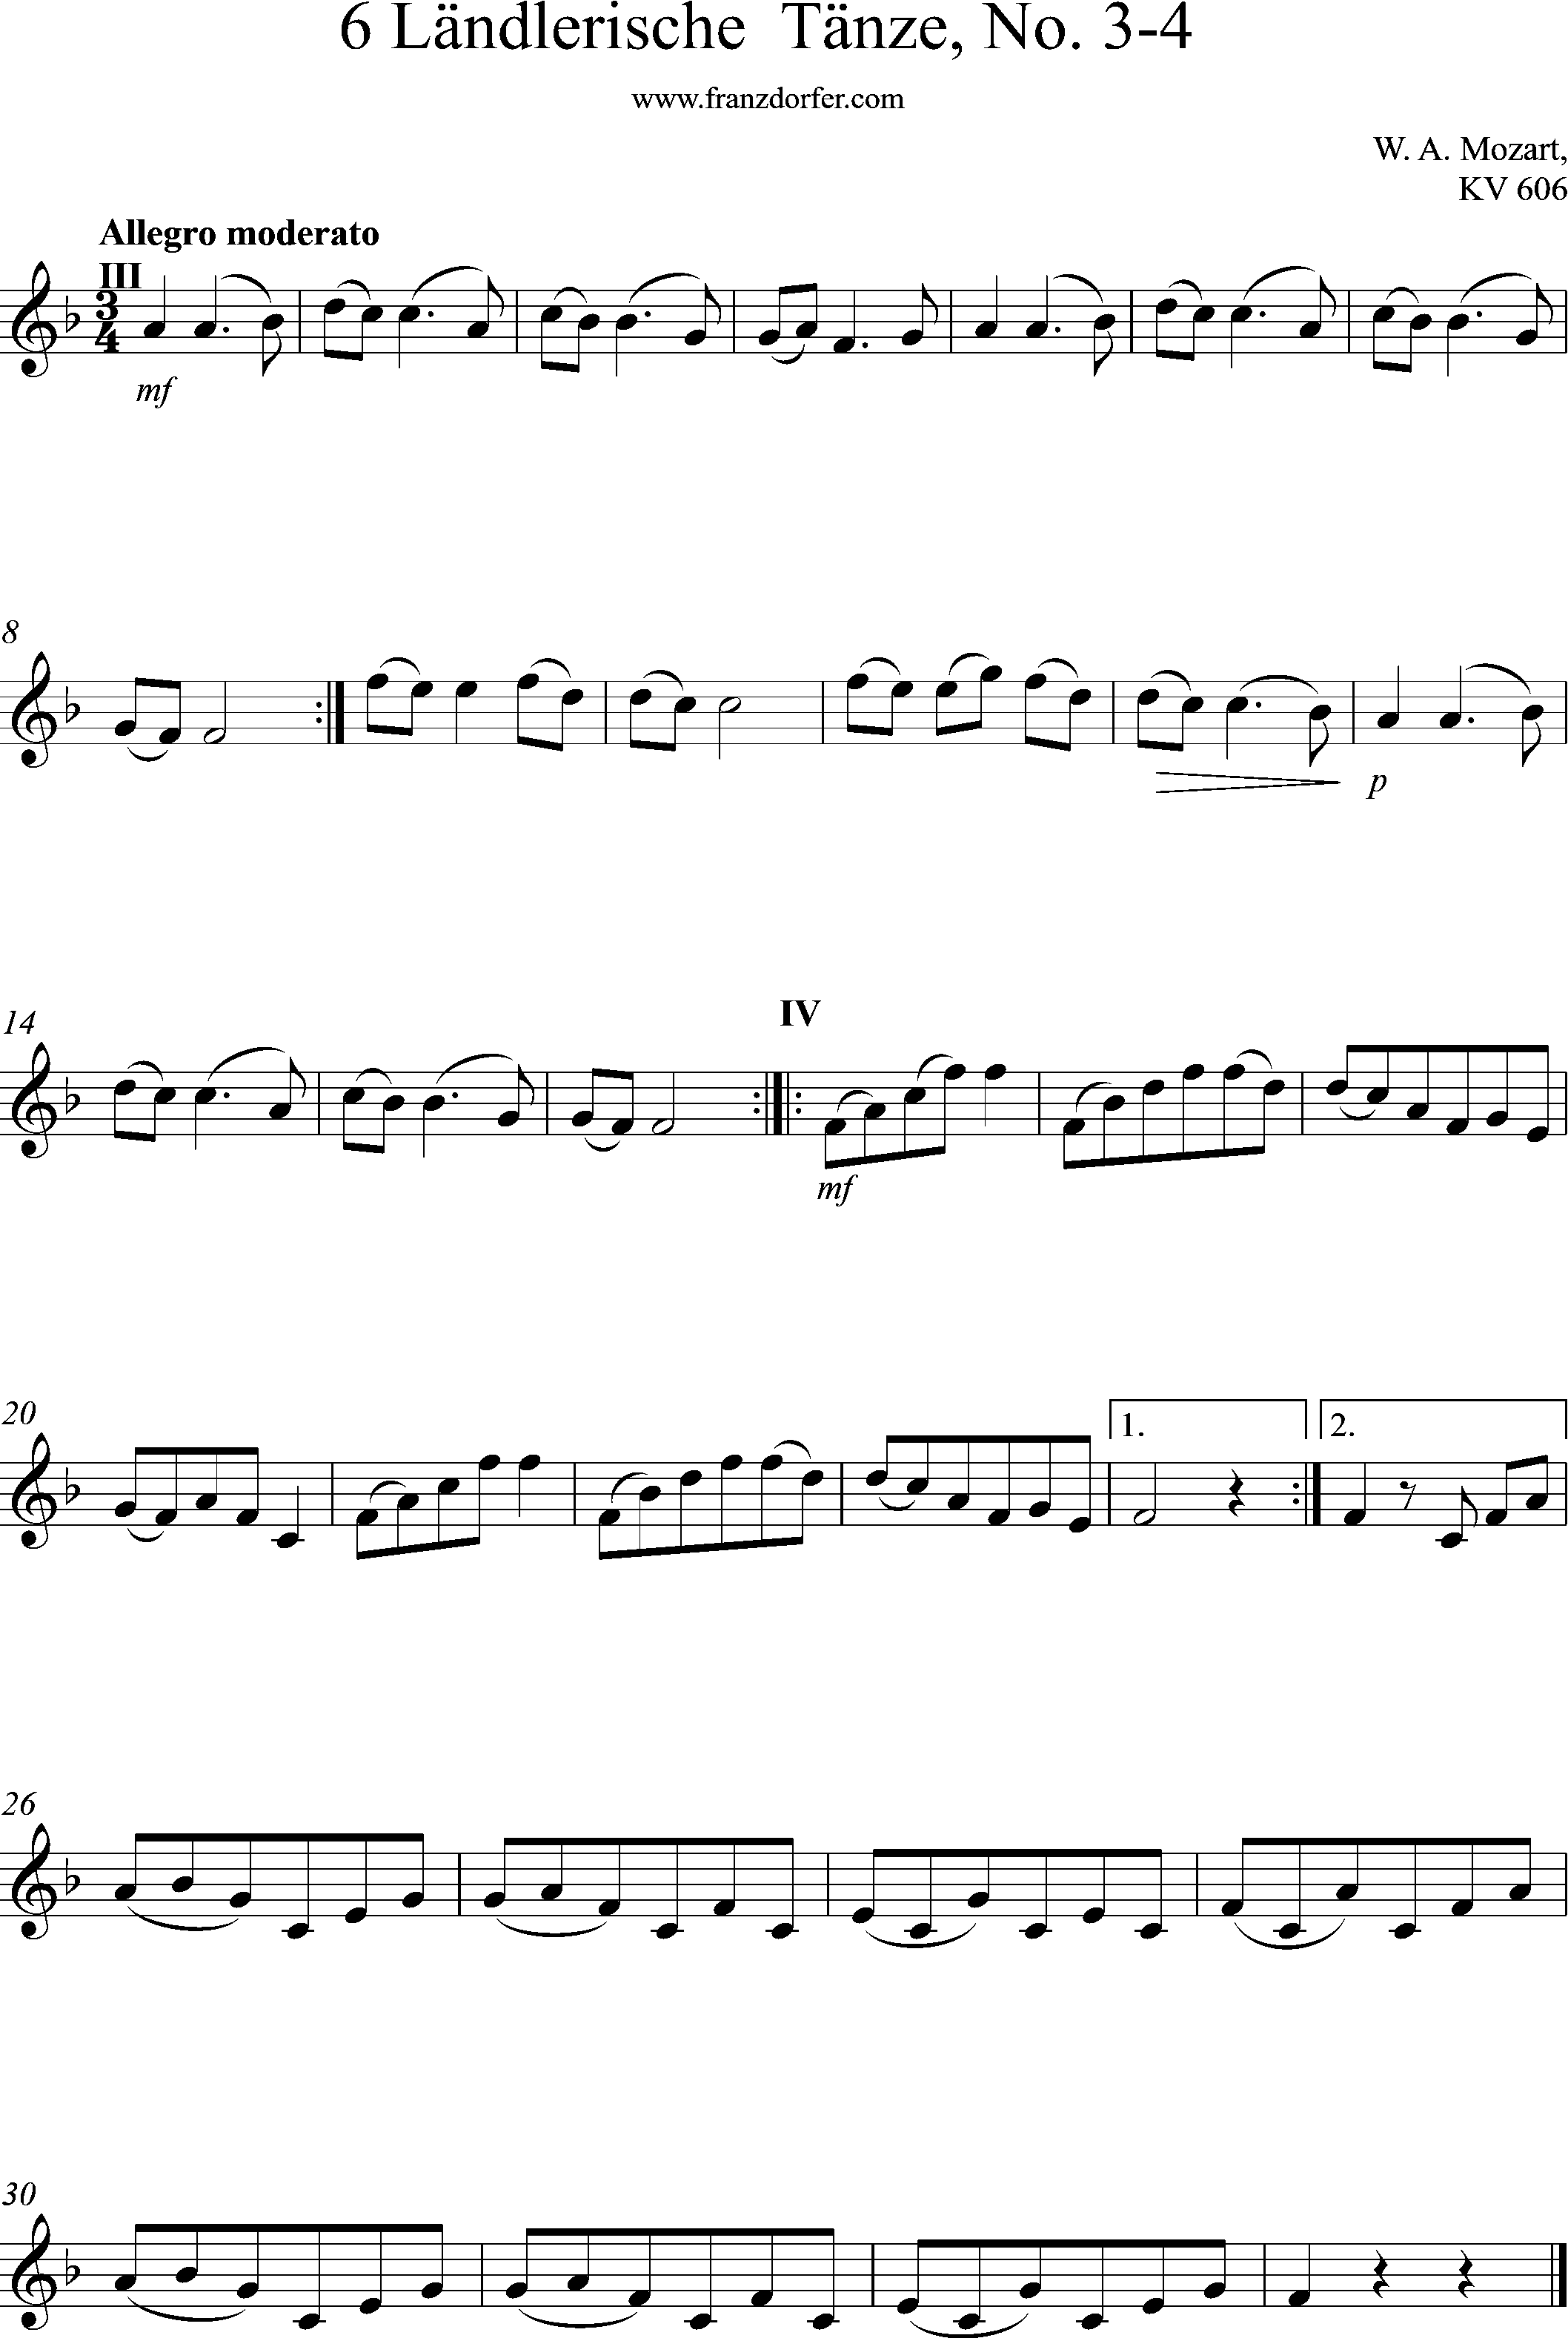 Clarinet Part 6 länlerische Tänze, F-Major